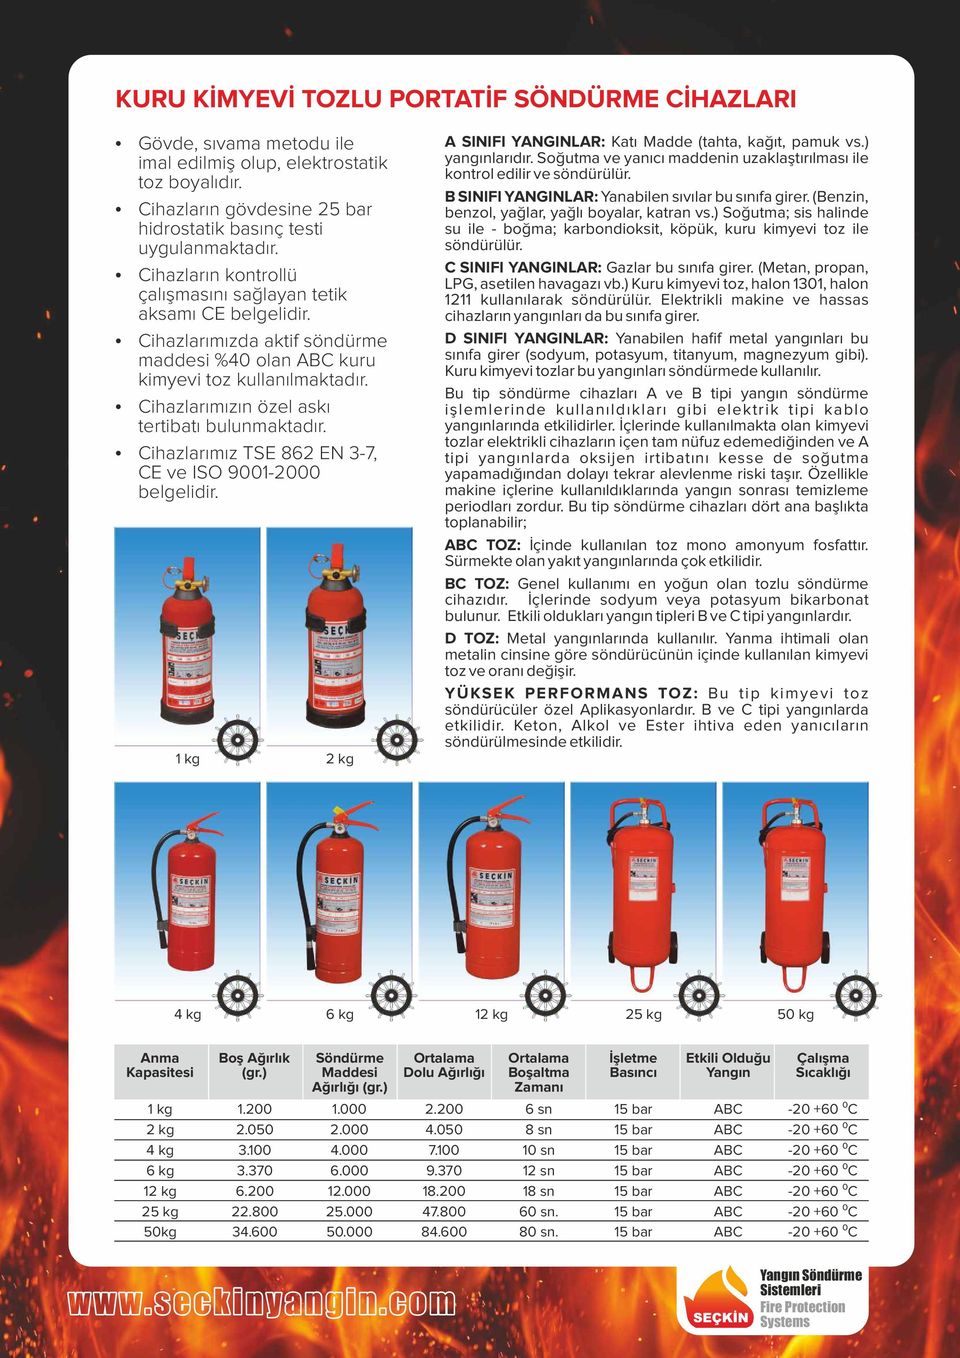 Ÿ Cihazlarımızın özel askı tertibatı bulunmaktadır. Ÿ Cihazlarımız TSE 862 EN 3-7, CE ve ISO 9001-2000 belgelidir. 1 kg 2 kg A SINIFI YANGINLAR: Katı Madde (tahta, kağıt, pamuk vs.) yangınlarıdır.